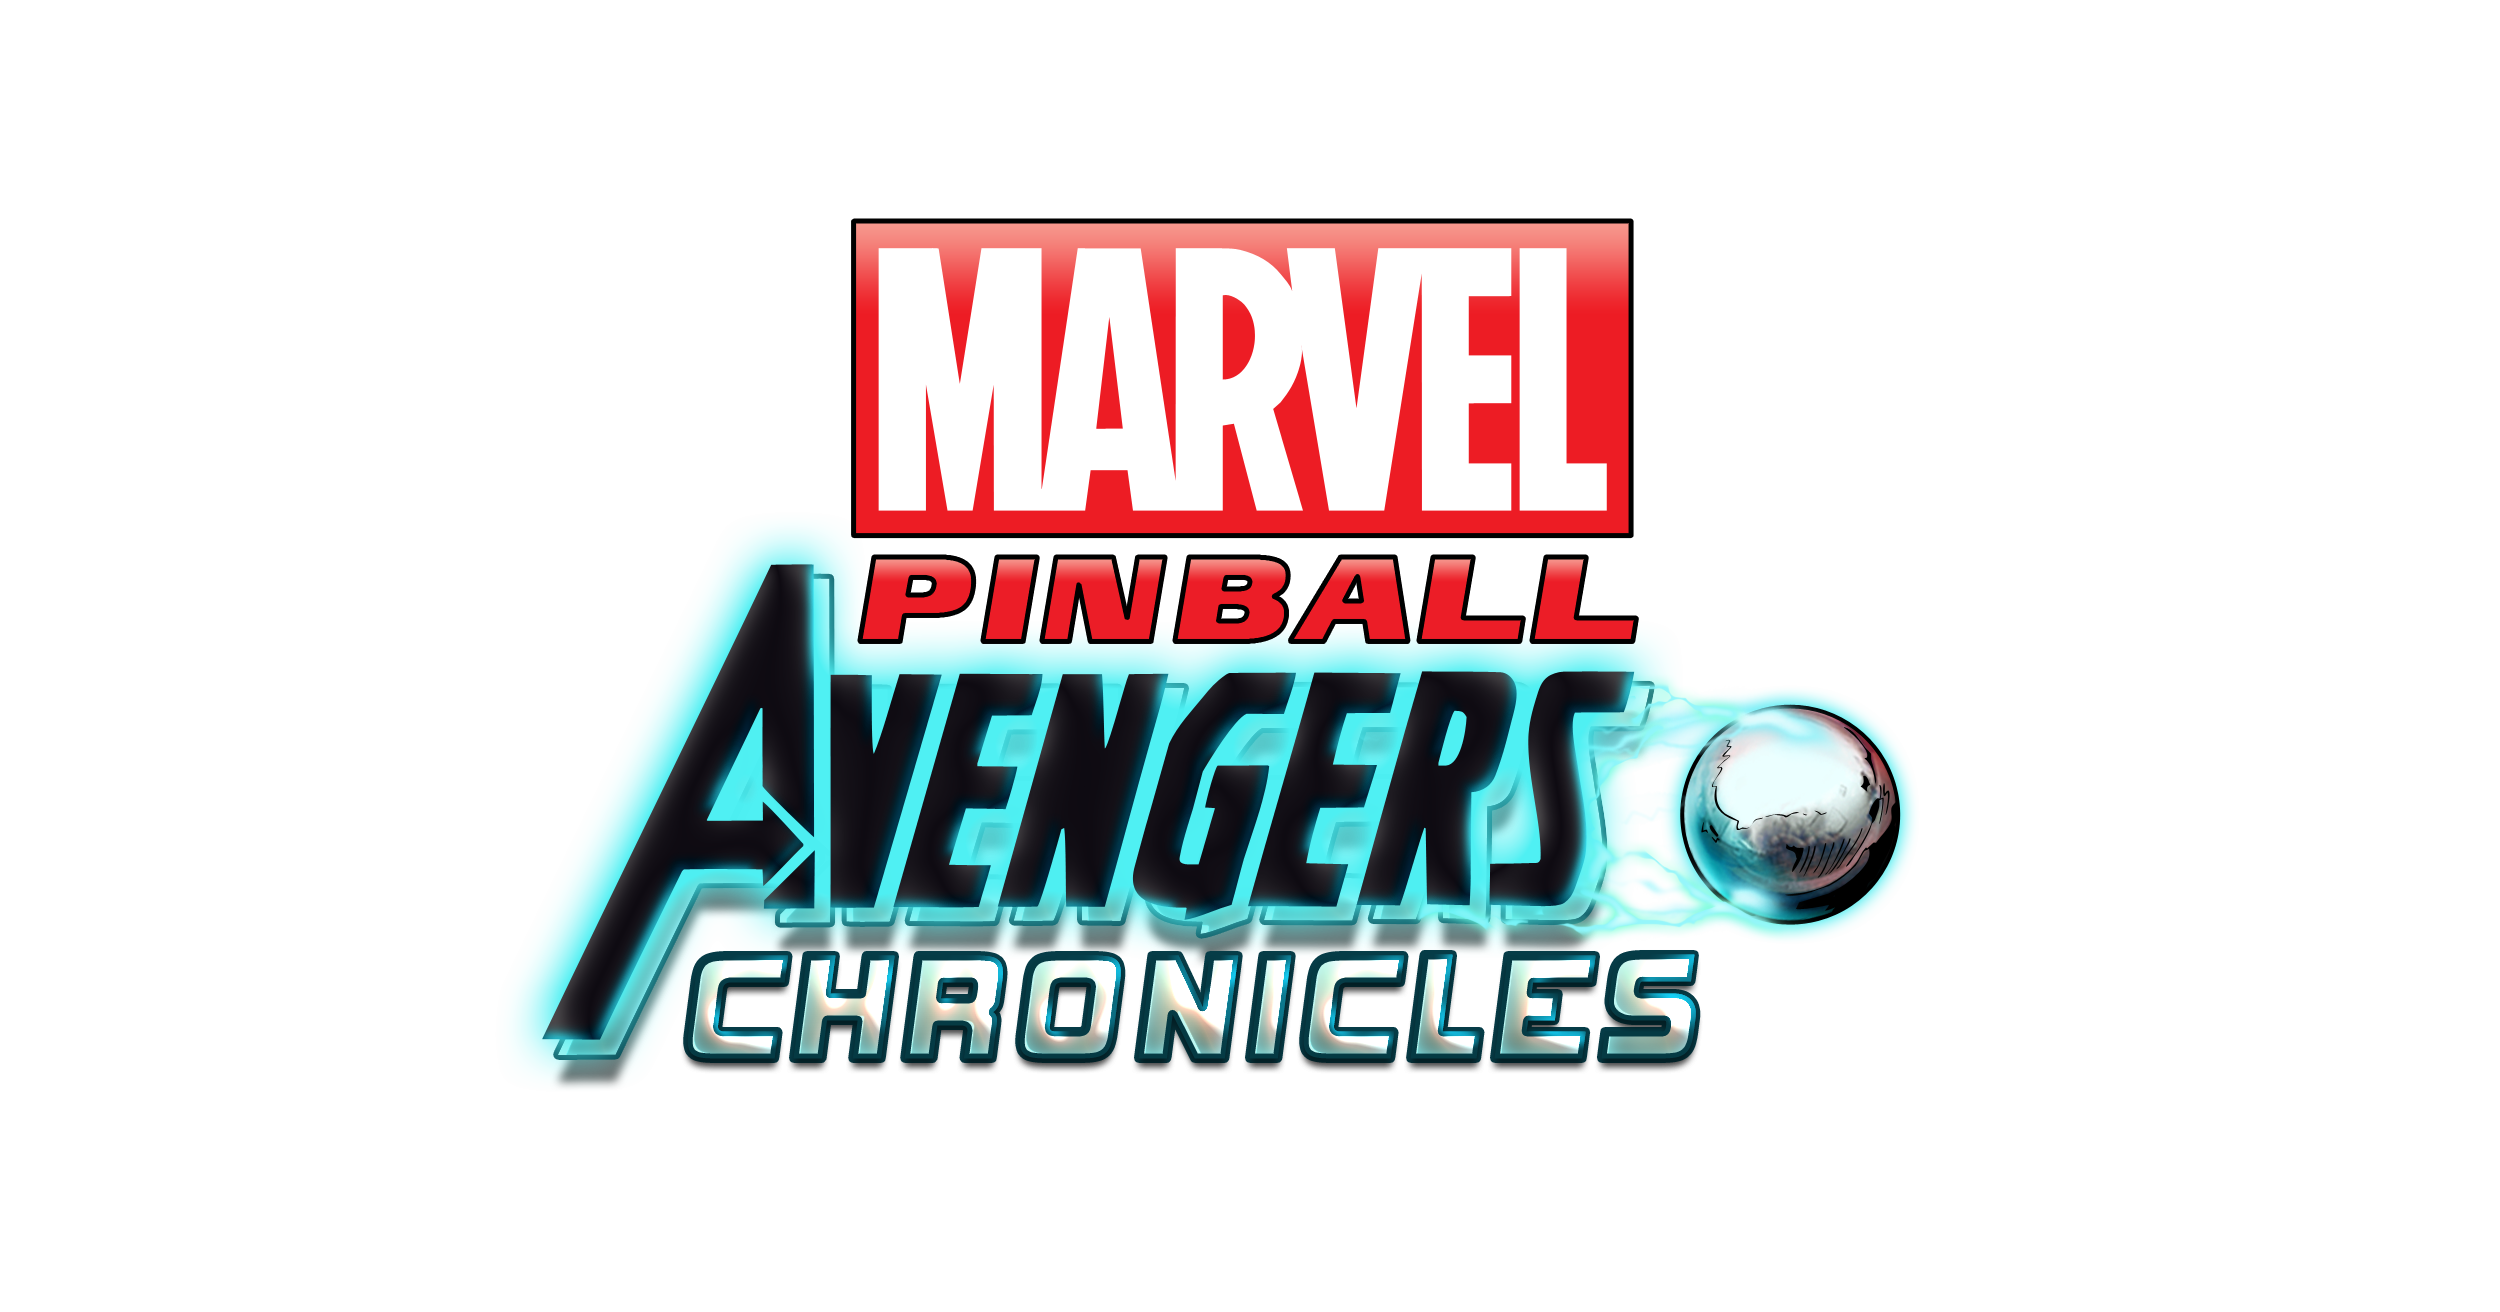 Marvel Pinball: The Avenger Chronicles First Trailer